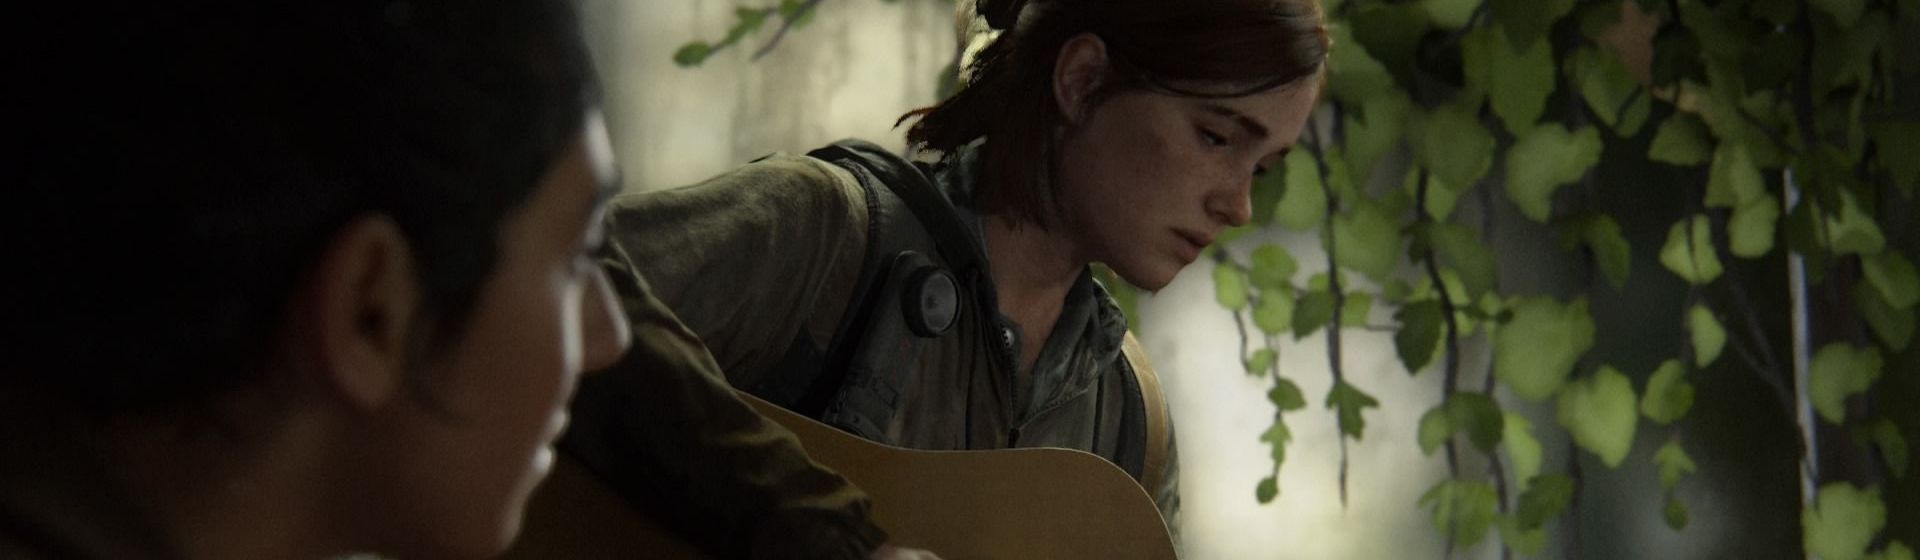 Capa do post: The Last of Us 3 já tem história definida, mas ainda não será produzido